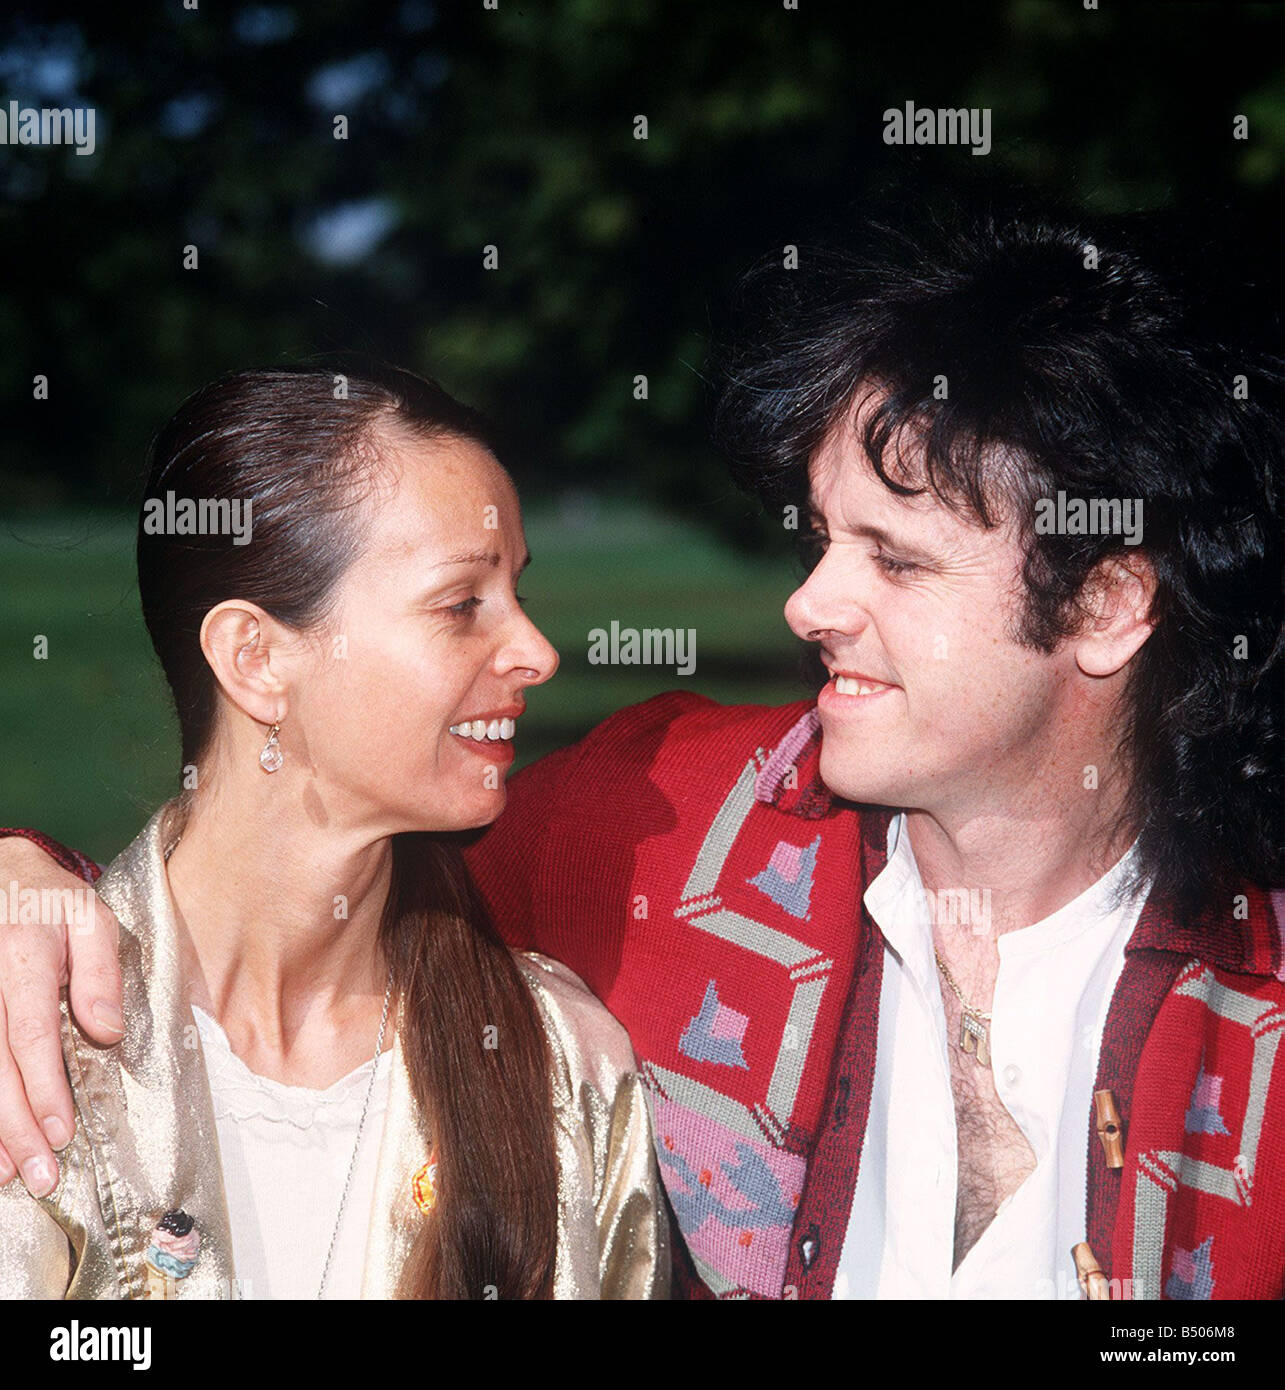 Sänger und Songwriter Donovan mit seiner Frau Linda Stockfoto